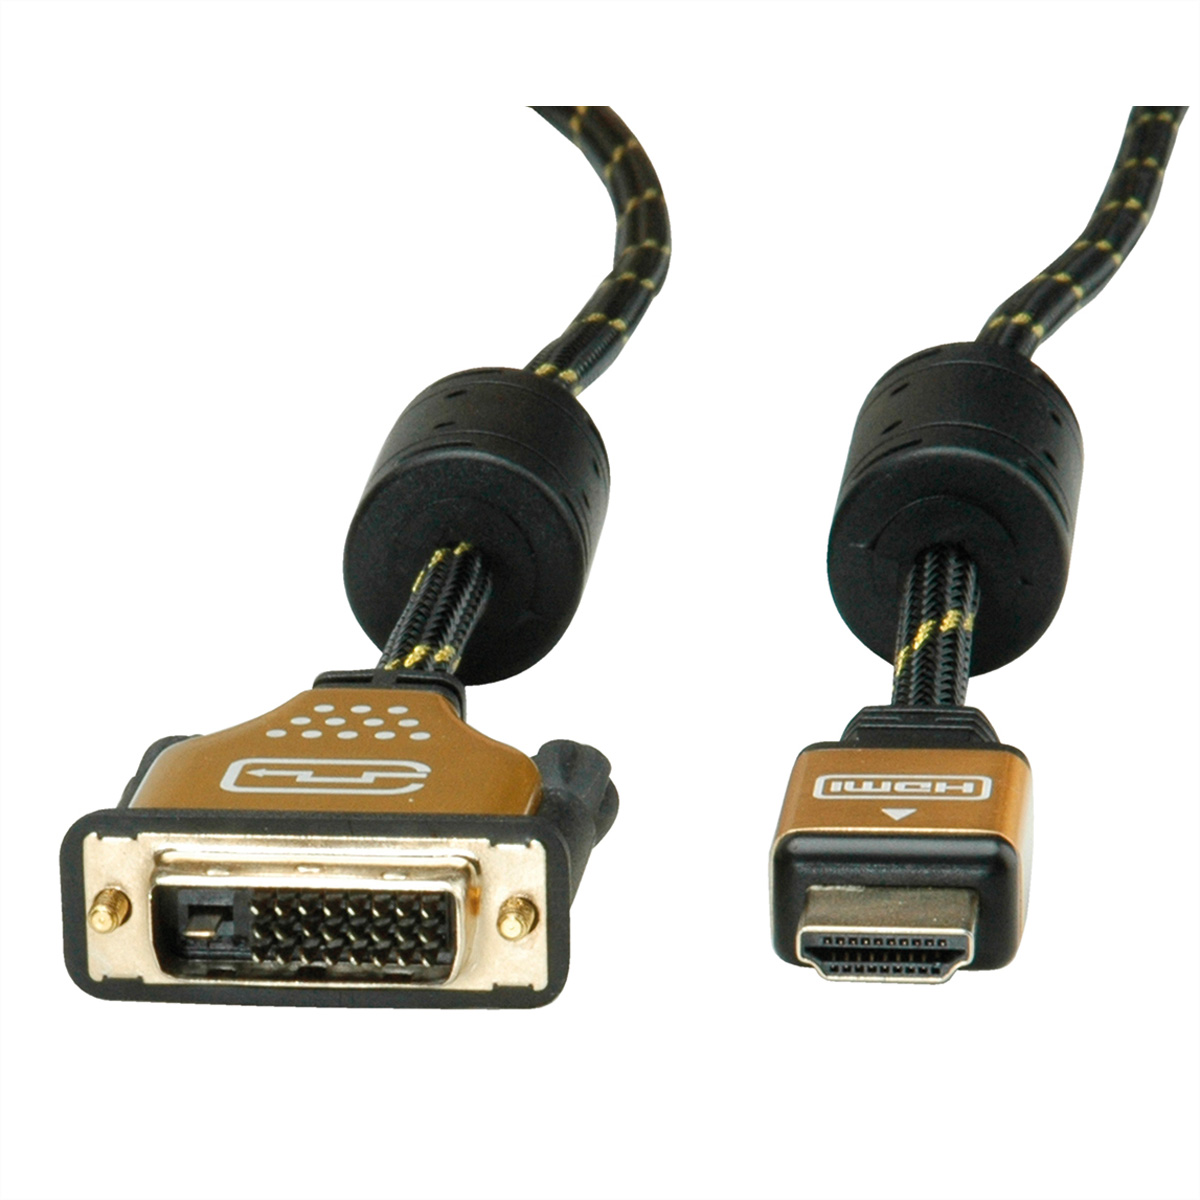 ROLINE GOLD - ST/ST, (24+1) DVI HDMI-DVI-Kabel, m 10 Monitorkabel HDMI